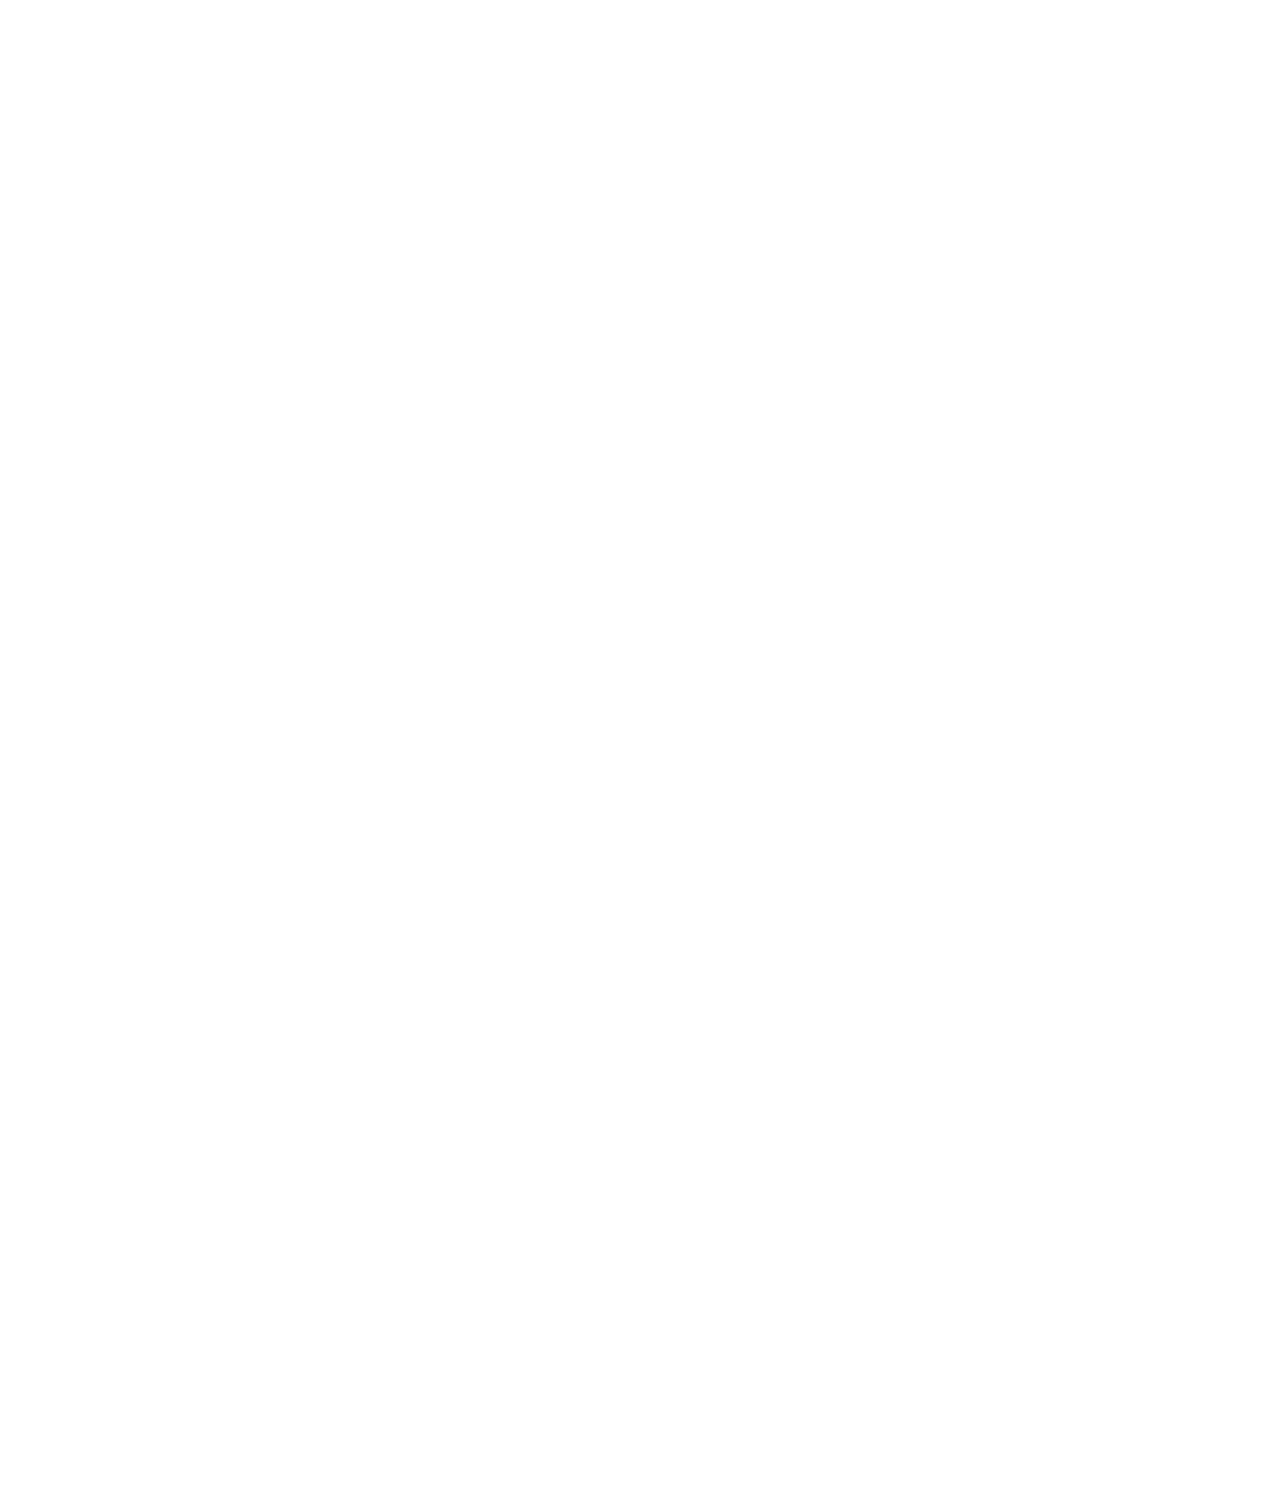 Apple logo pour fonds sombres (PNG transparent)